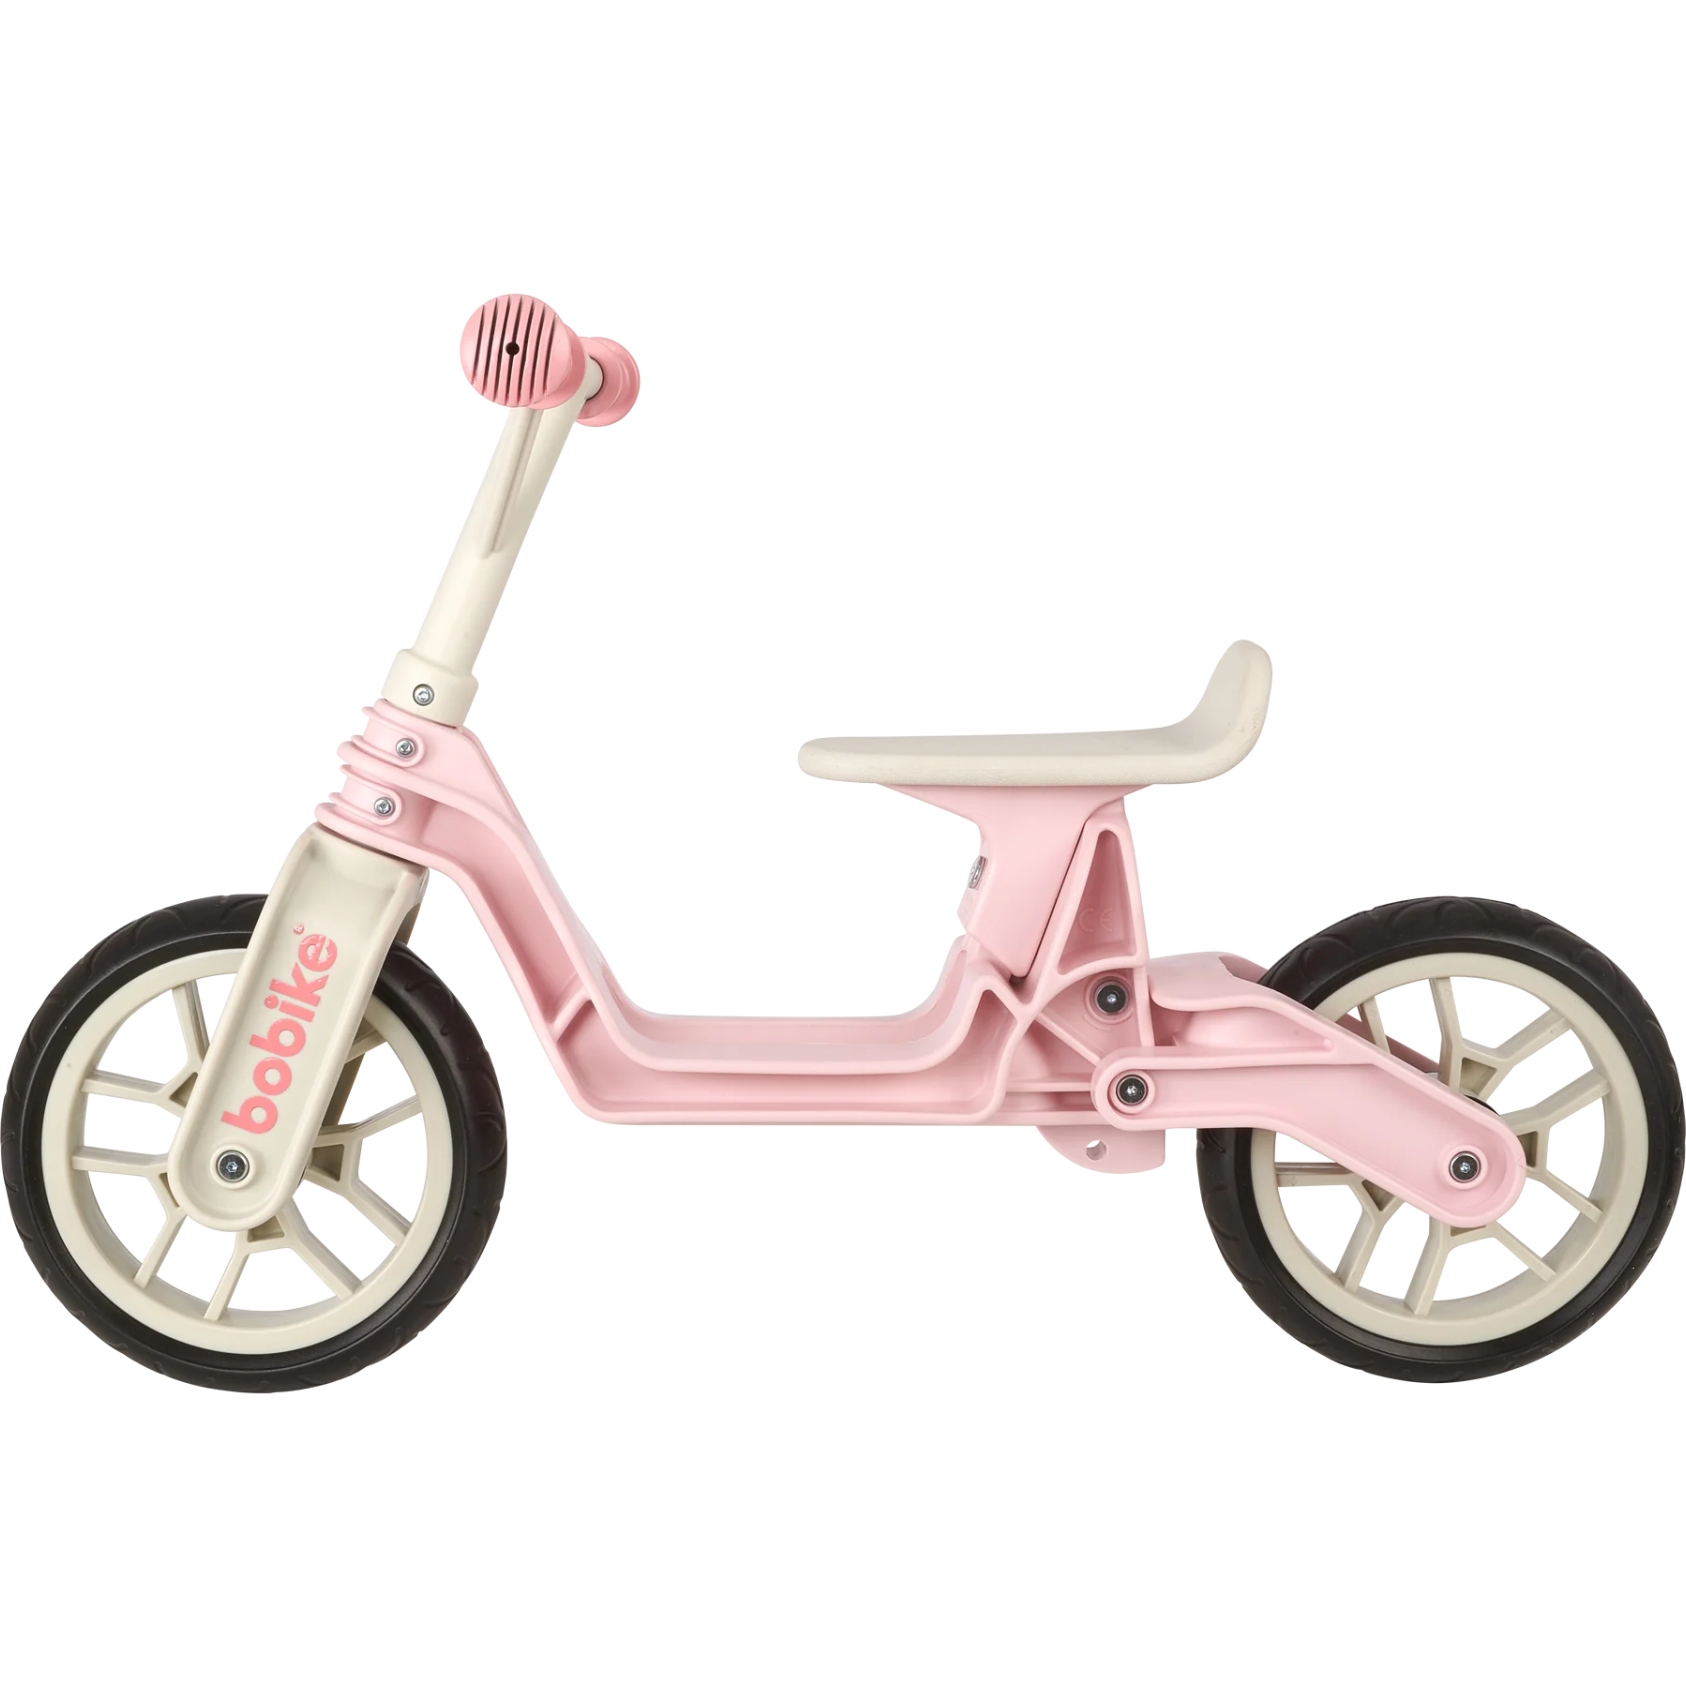 Picture of Bobike Balance Bike - cotton candy pink